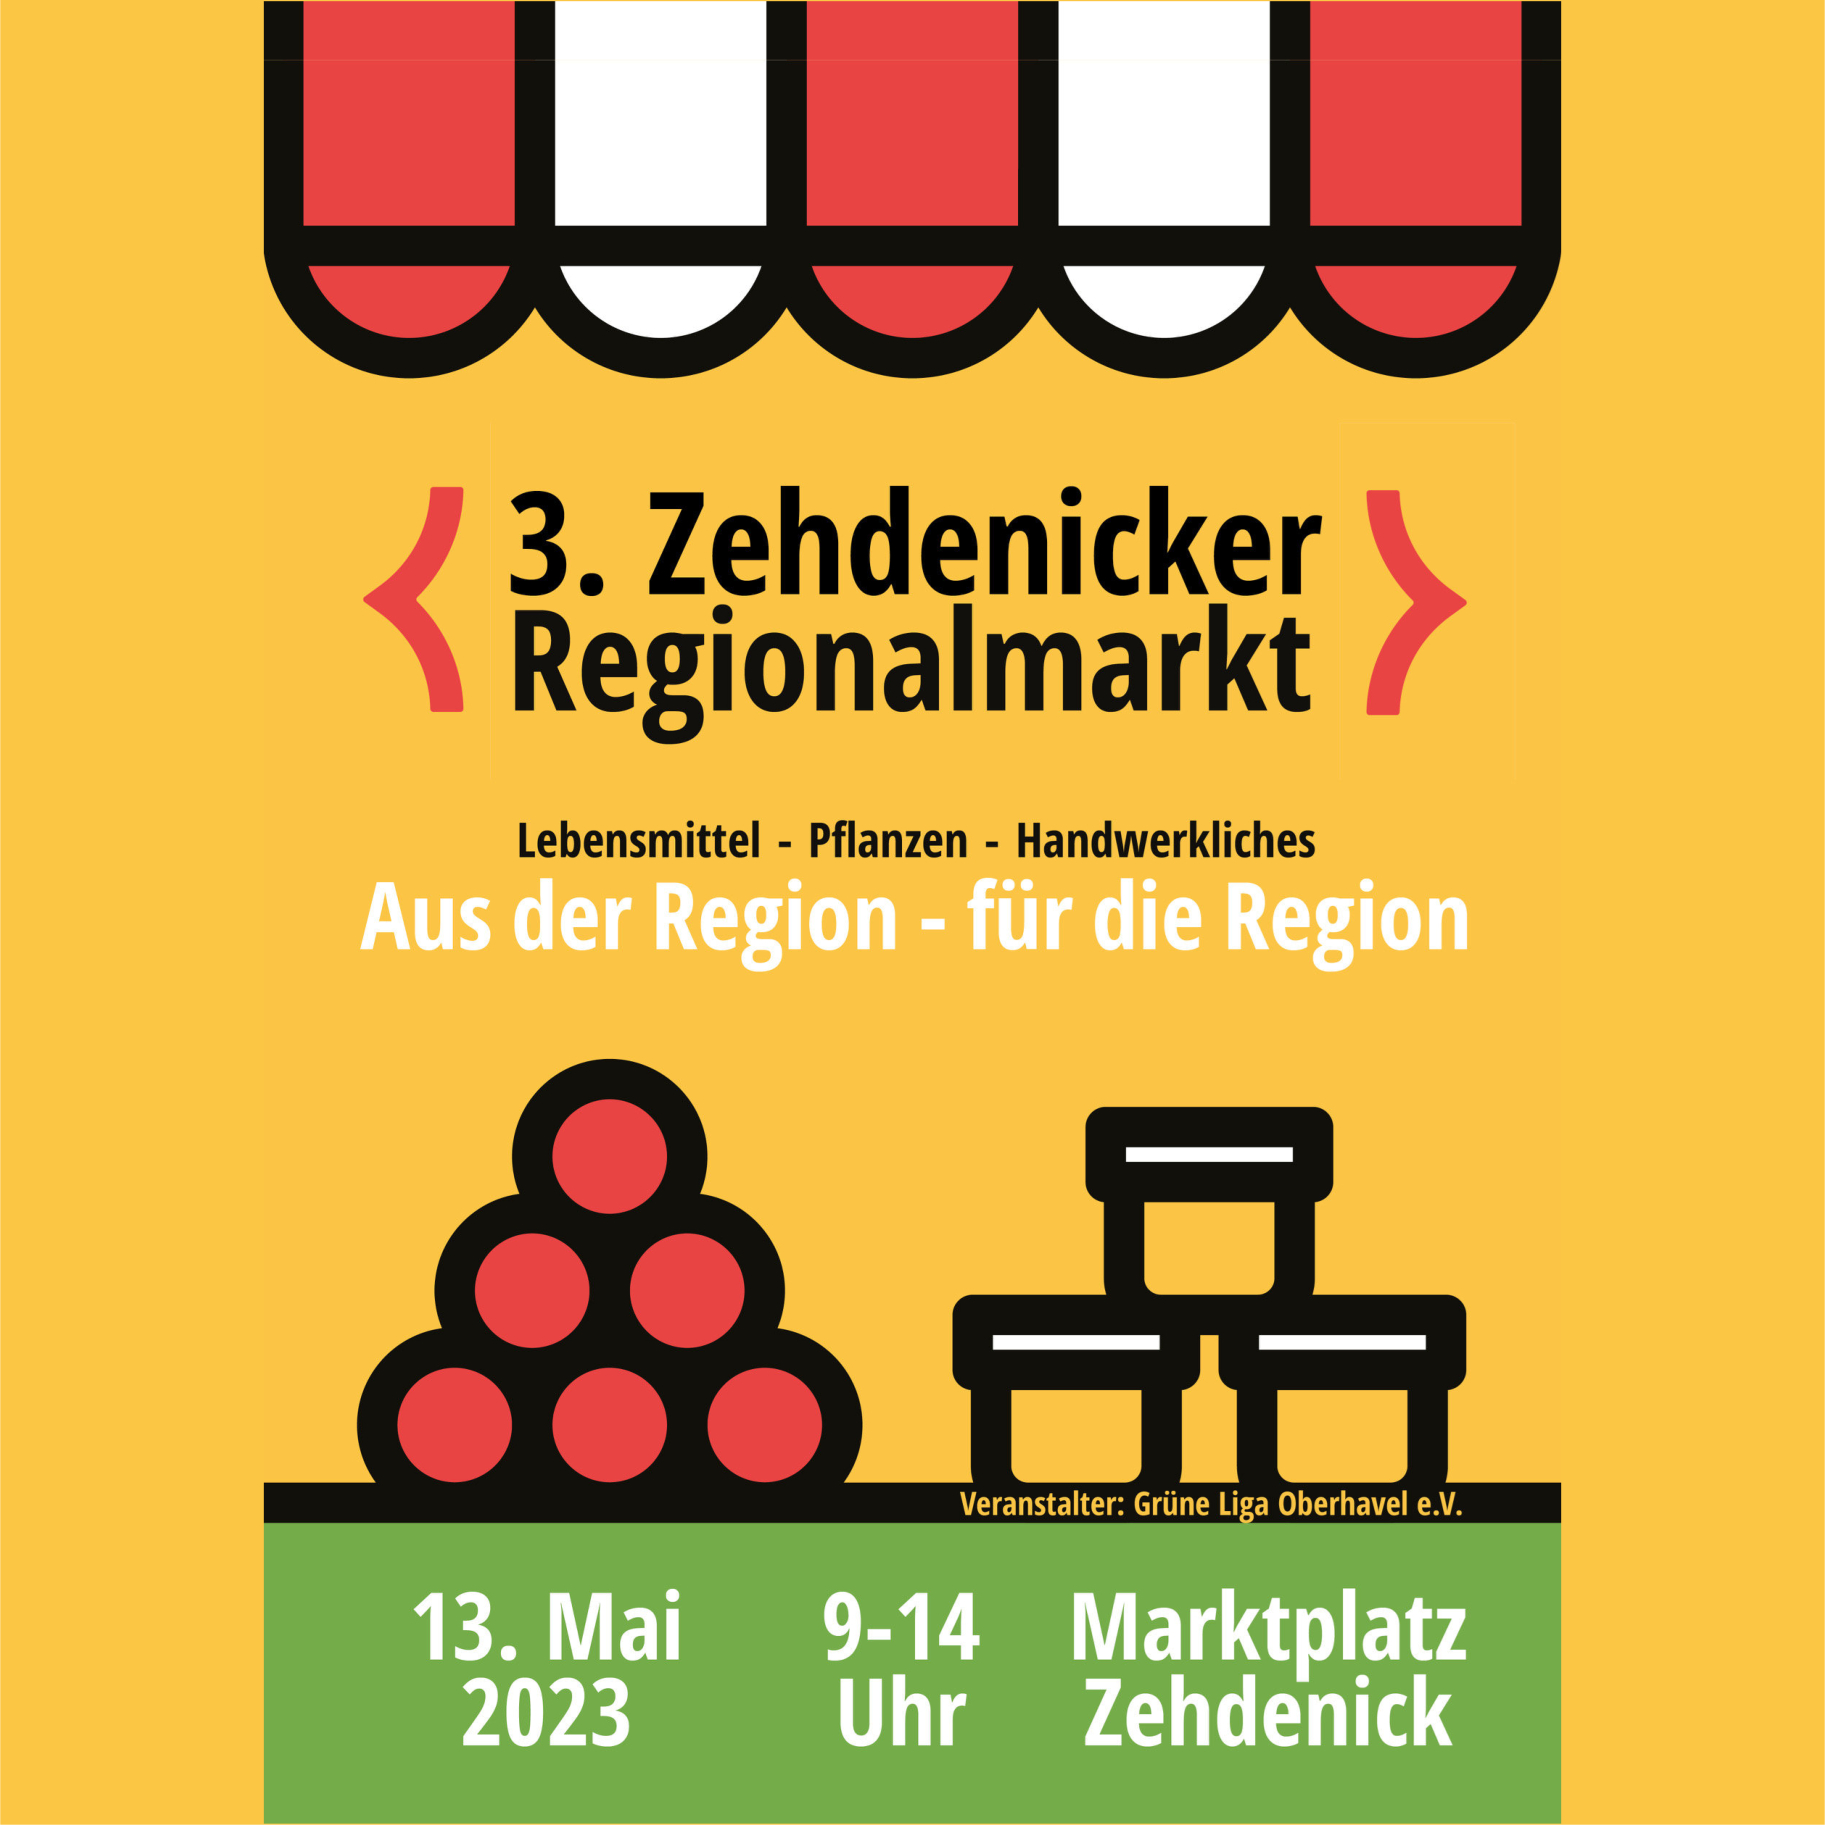 Einladung zum Zehdenicker Regionalmarkt am 13. Mai 2023 - Meine Pralinen und ich sind dabei!